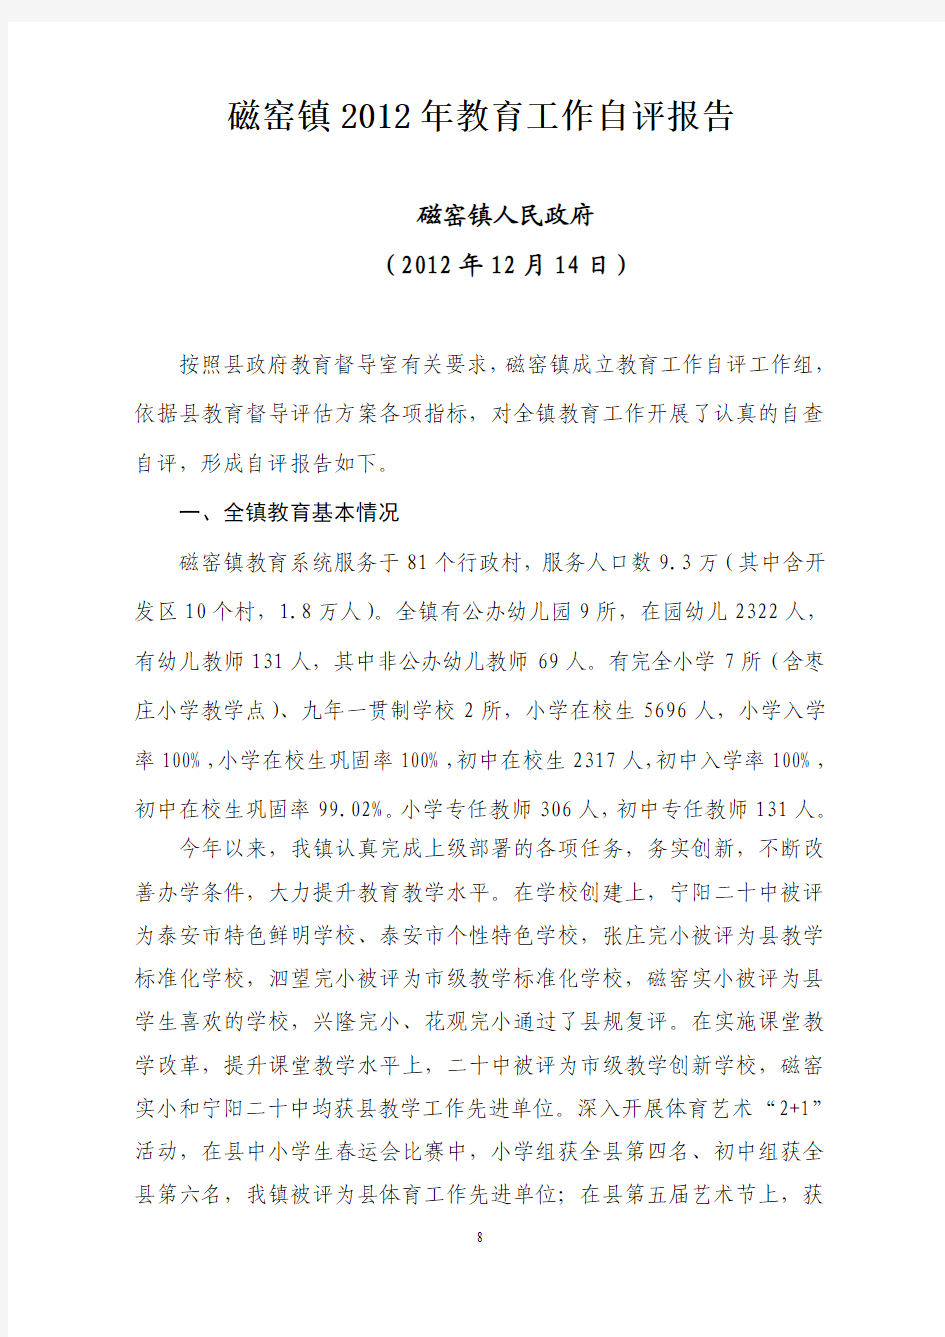 磁窑镇2012年教育工作自评报告